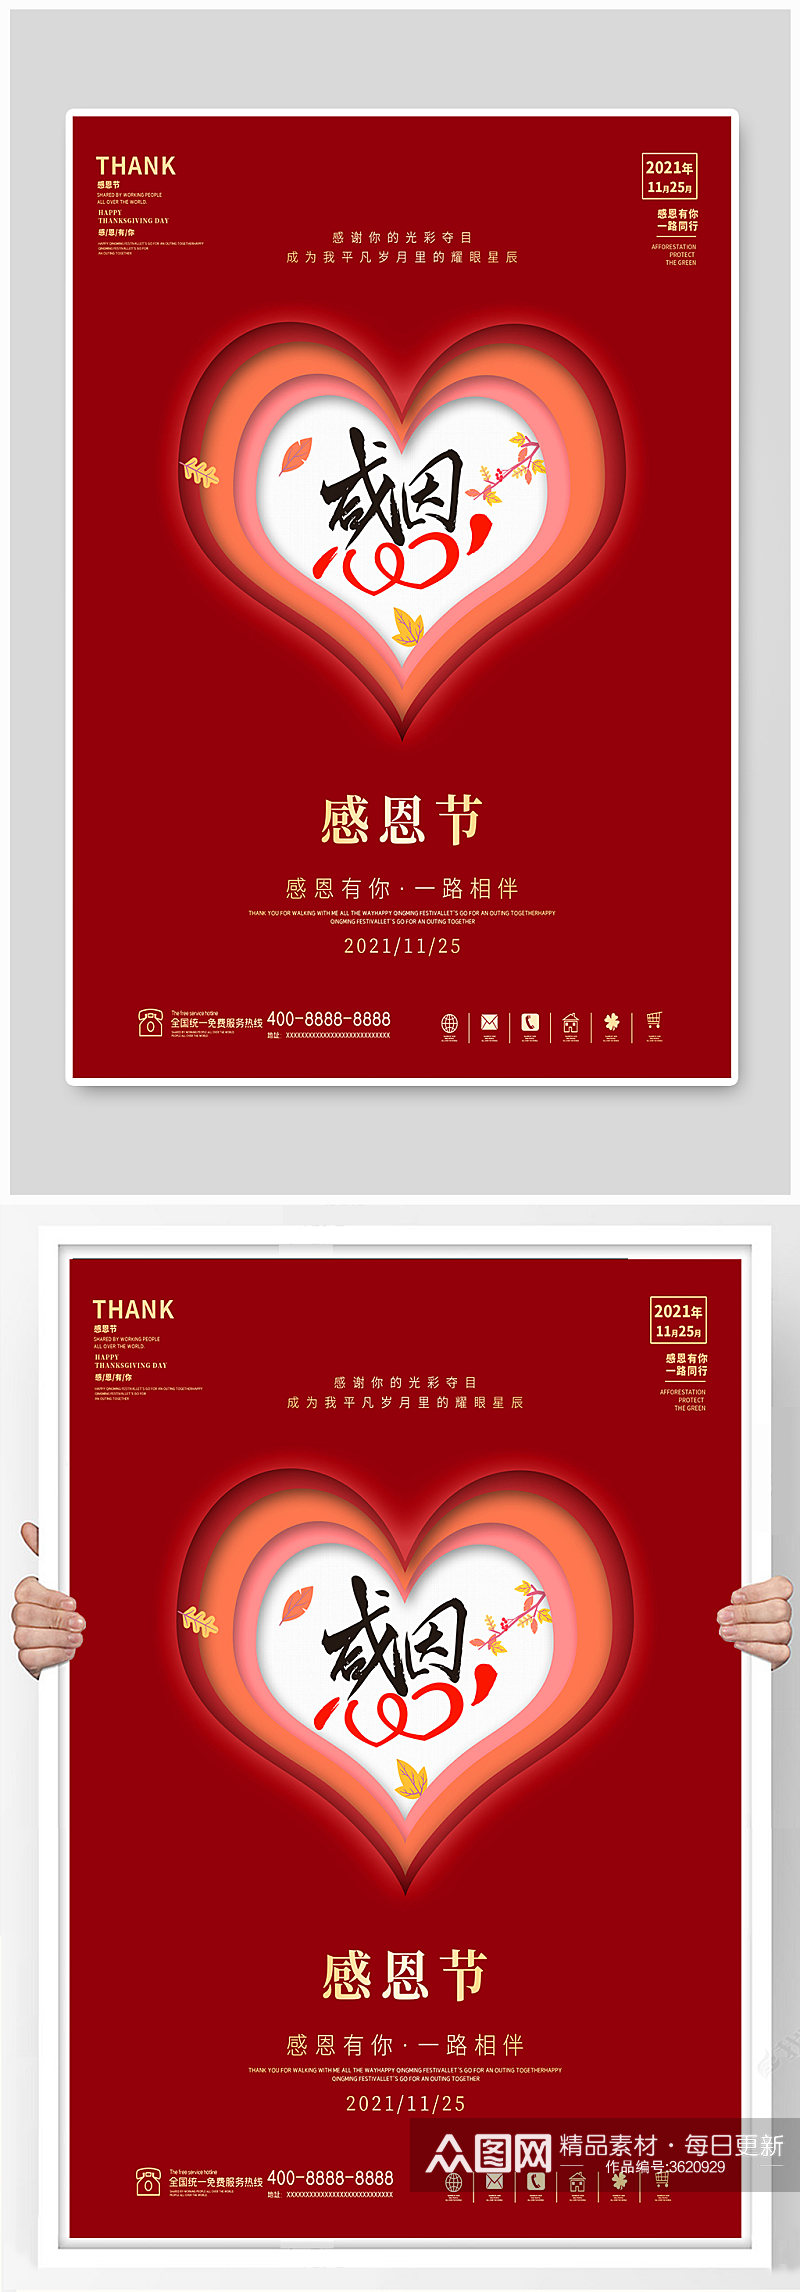 感恩节海报红色喜庆大气传统节日创意简约素材